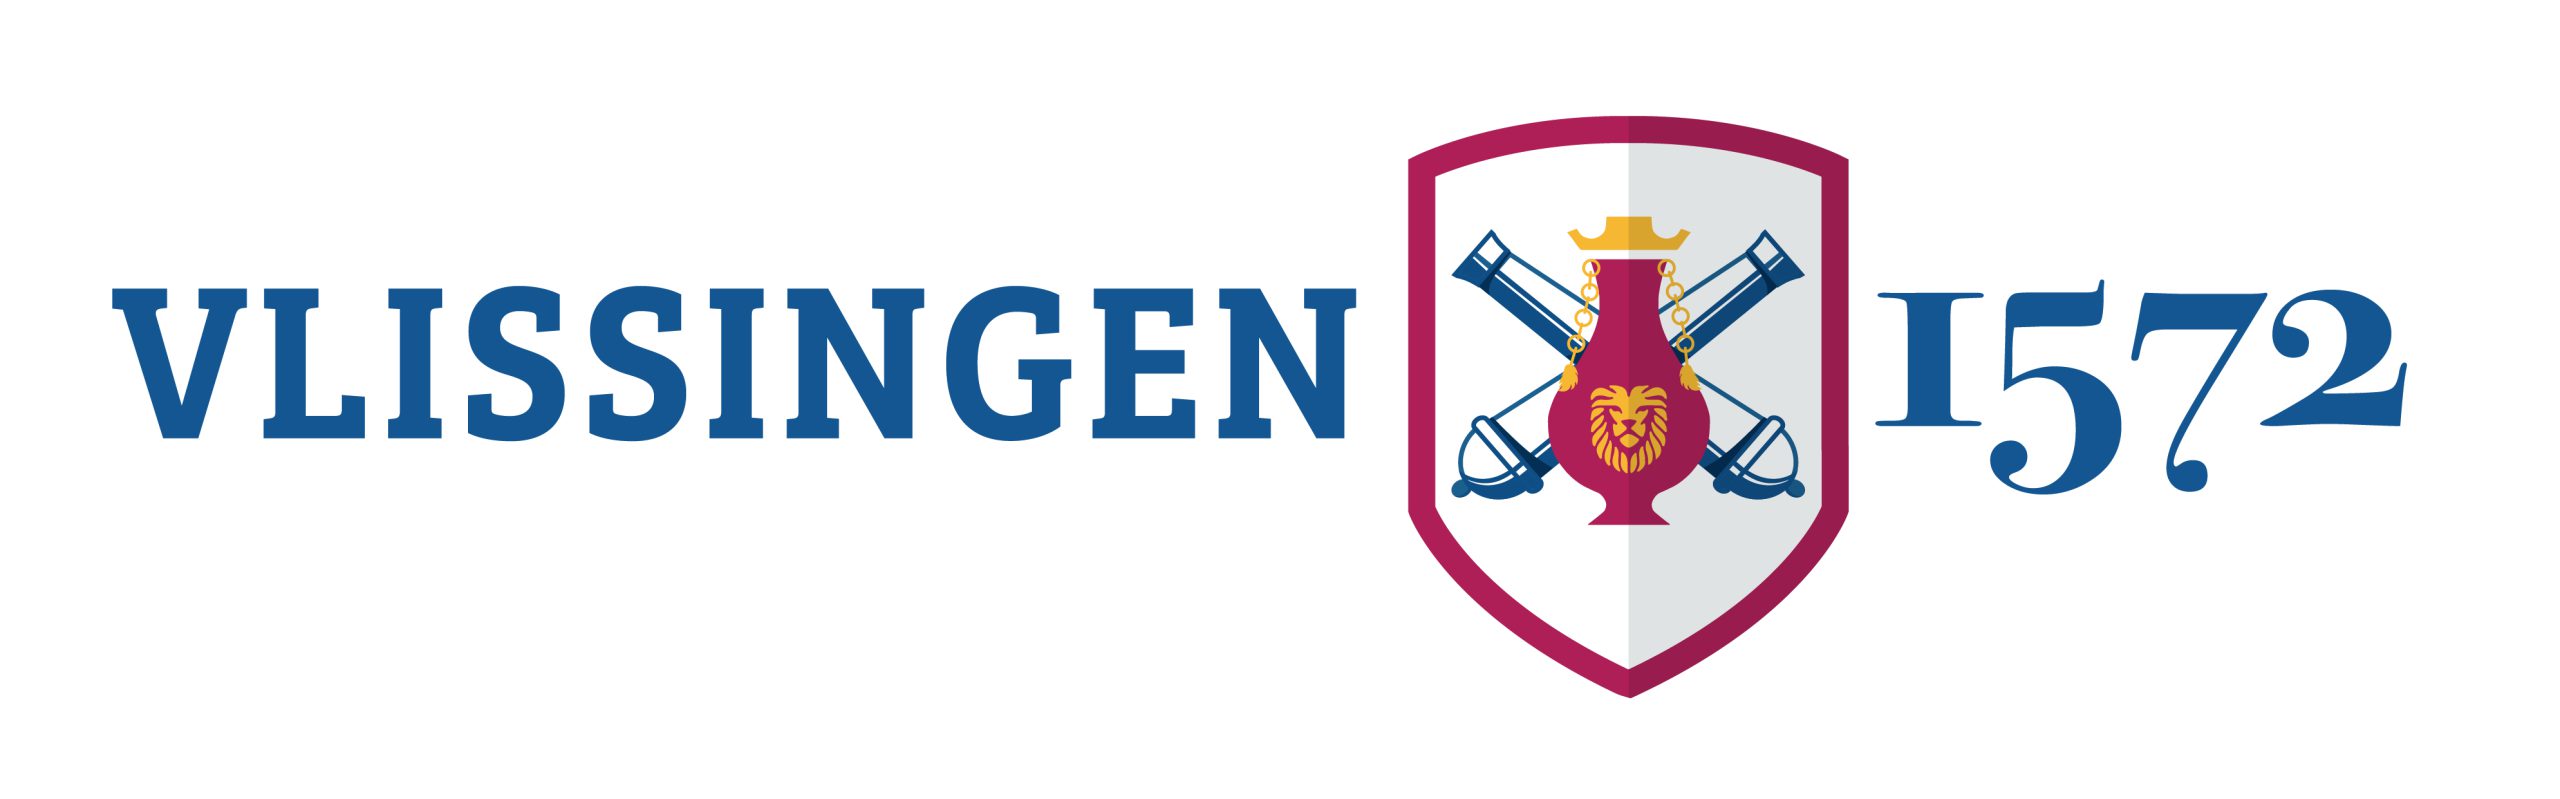 Logo Vlissingen 1572